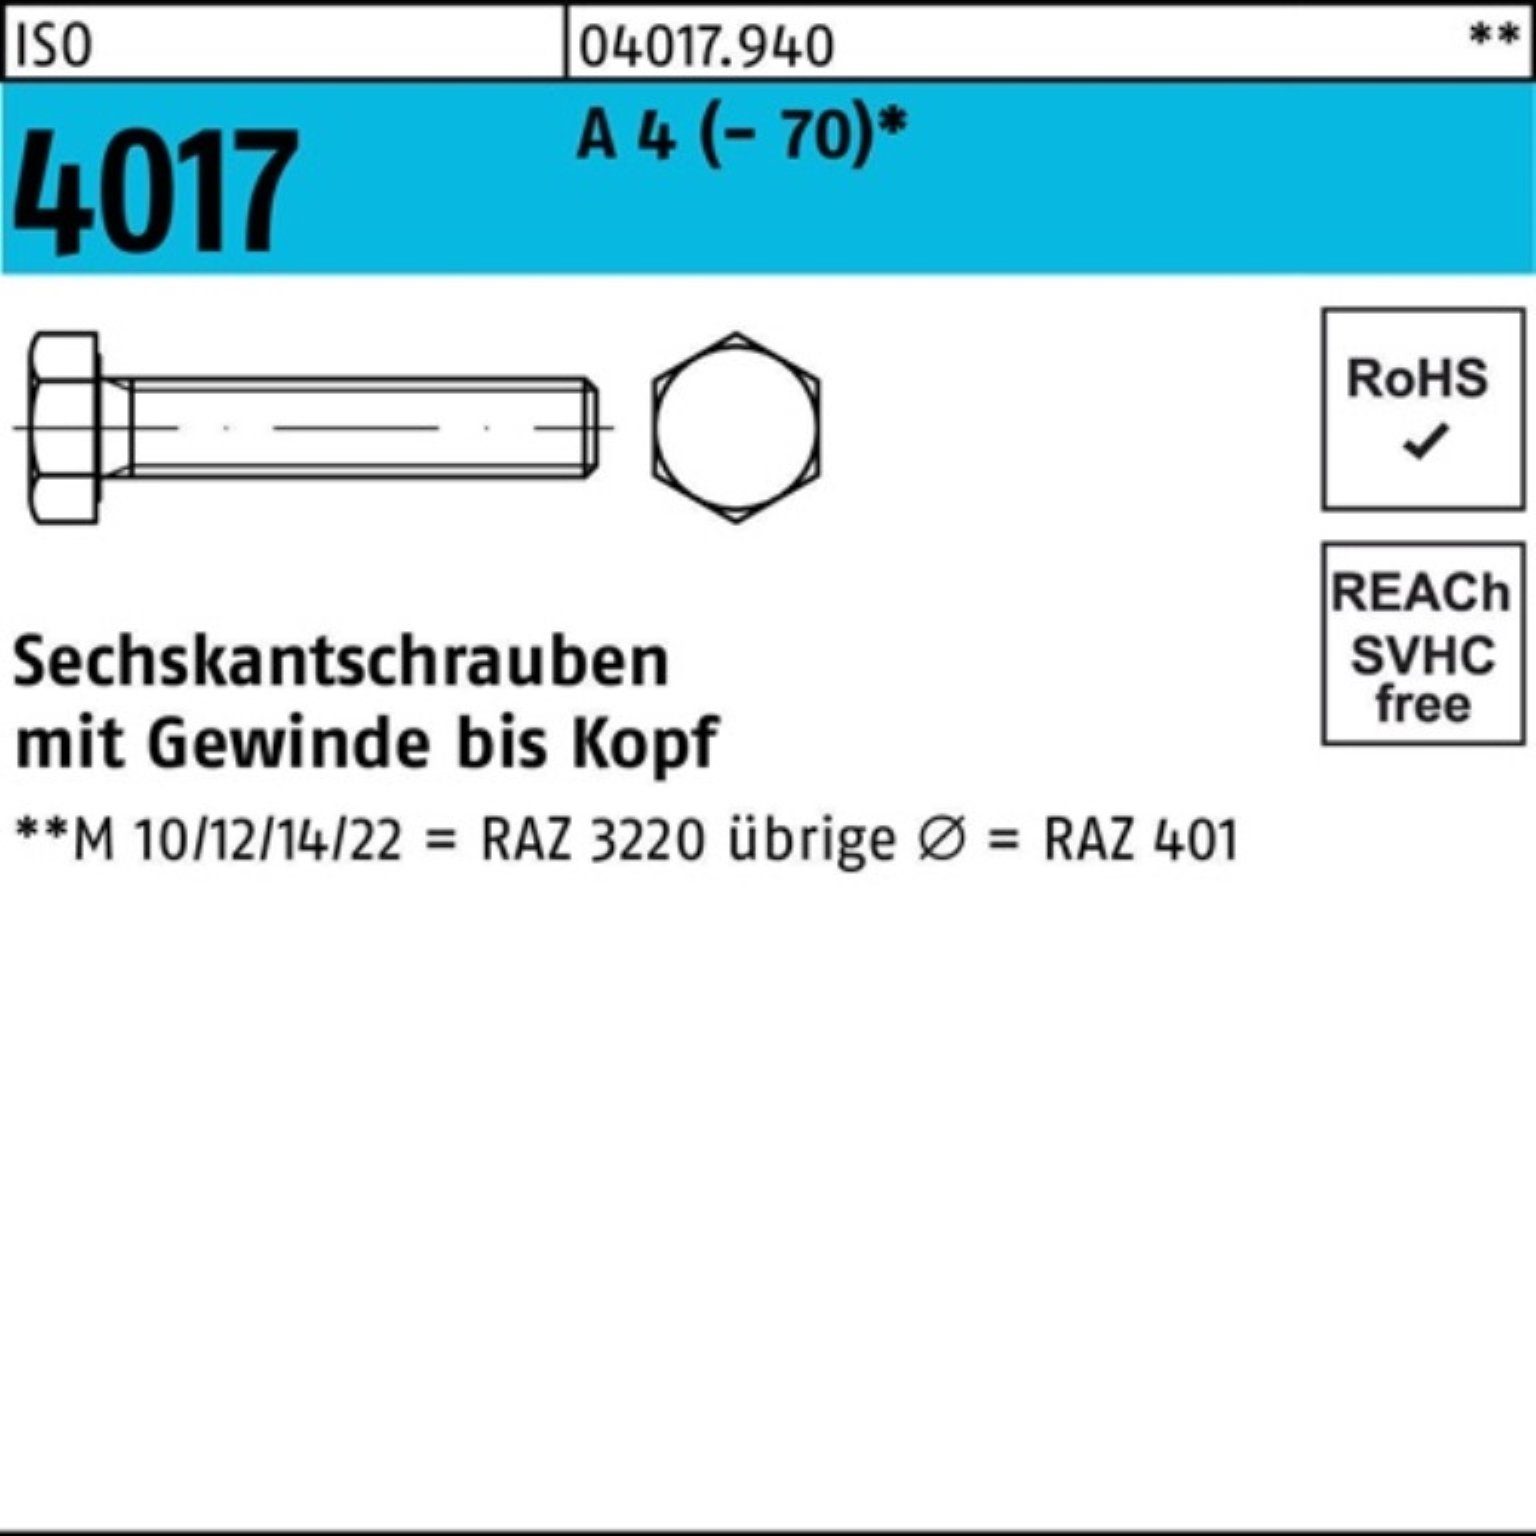 Bufab Sechskantschraube 100er Pack Sechskantschraube ISO 4017 VG M8x 130 A 4 (70) 1 Stück I